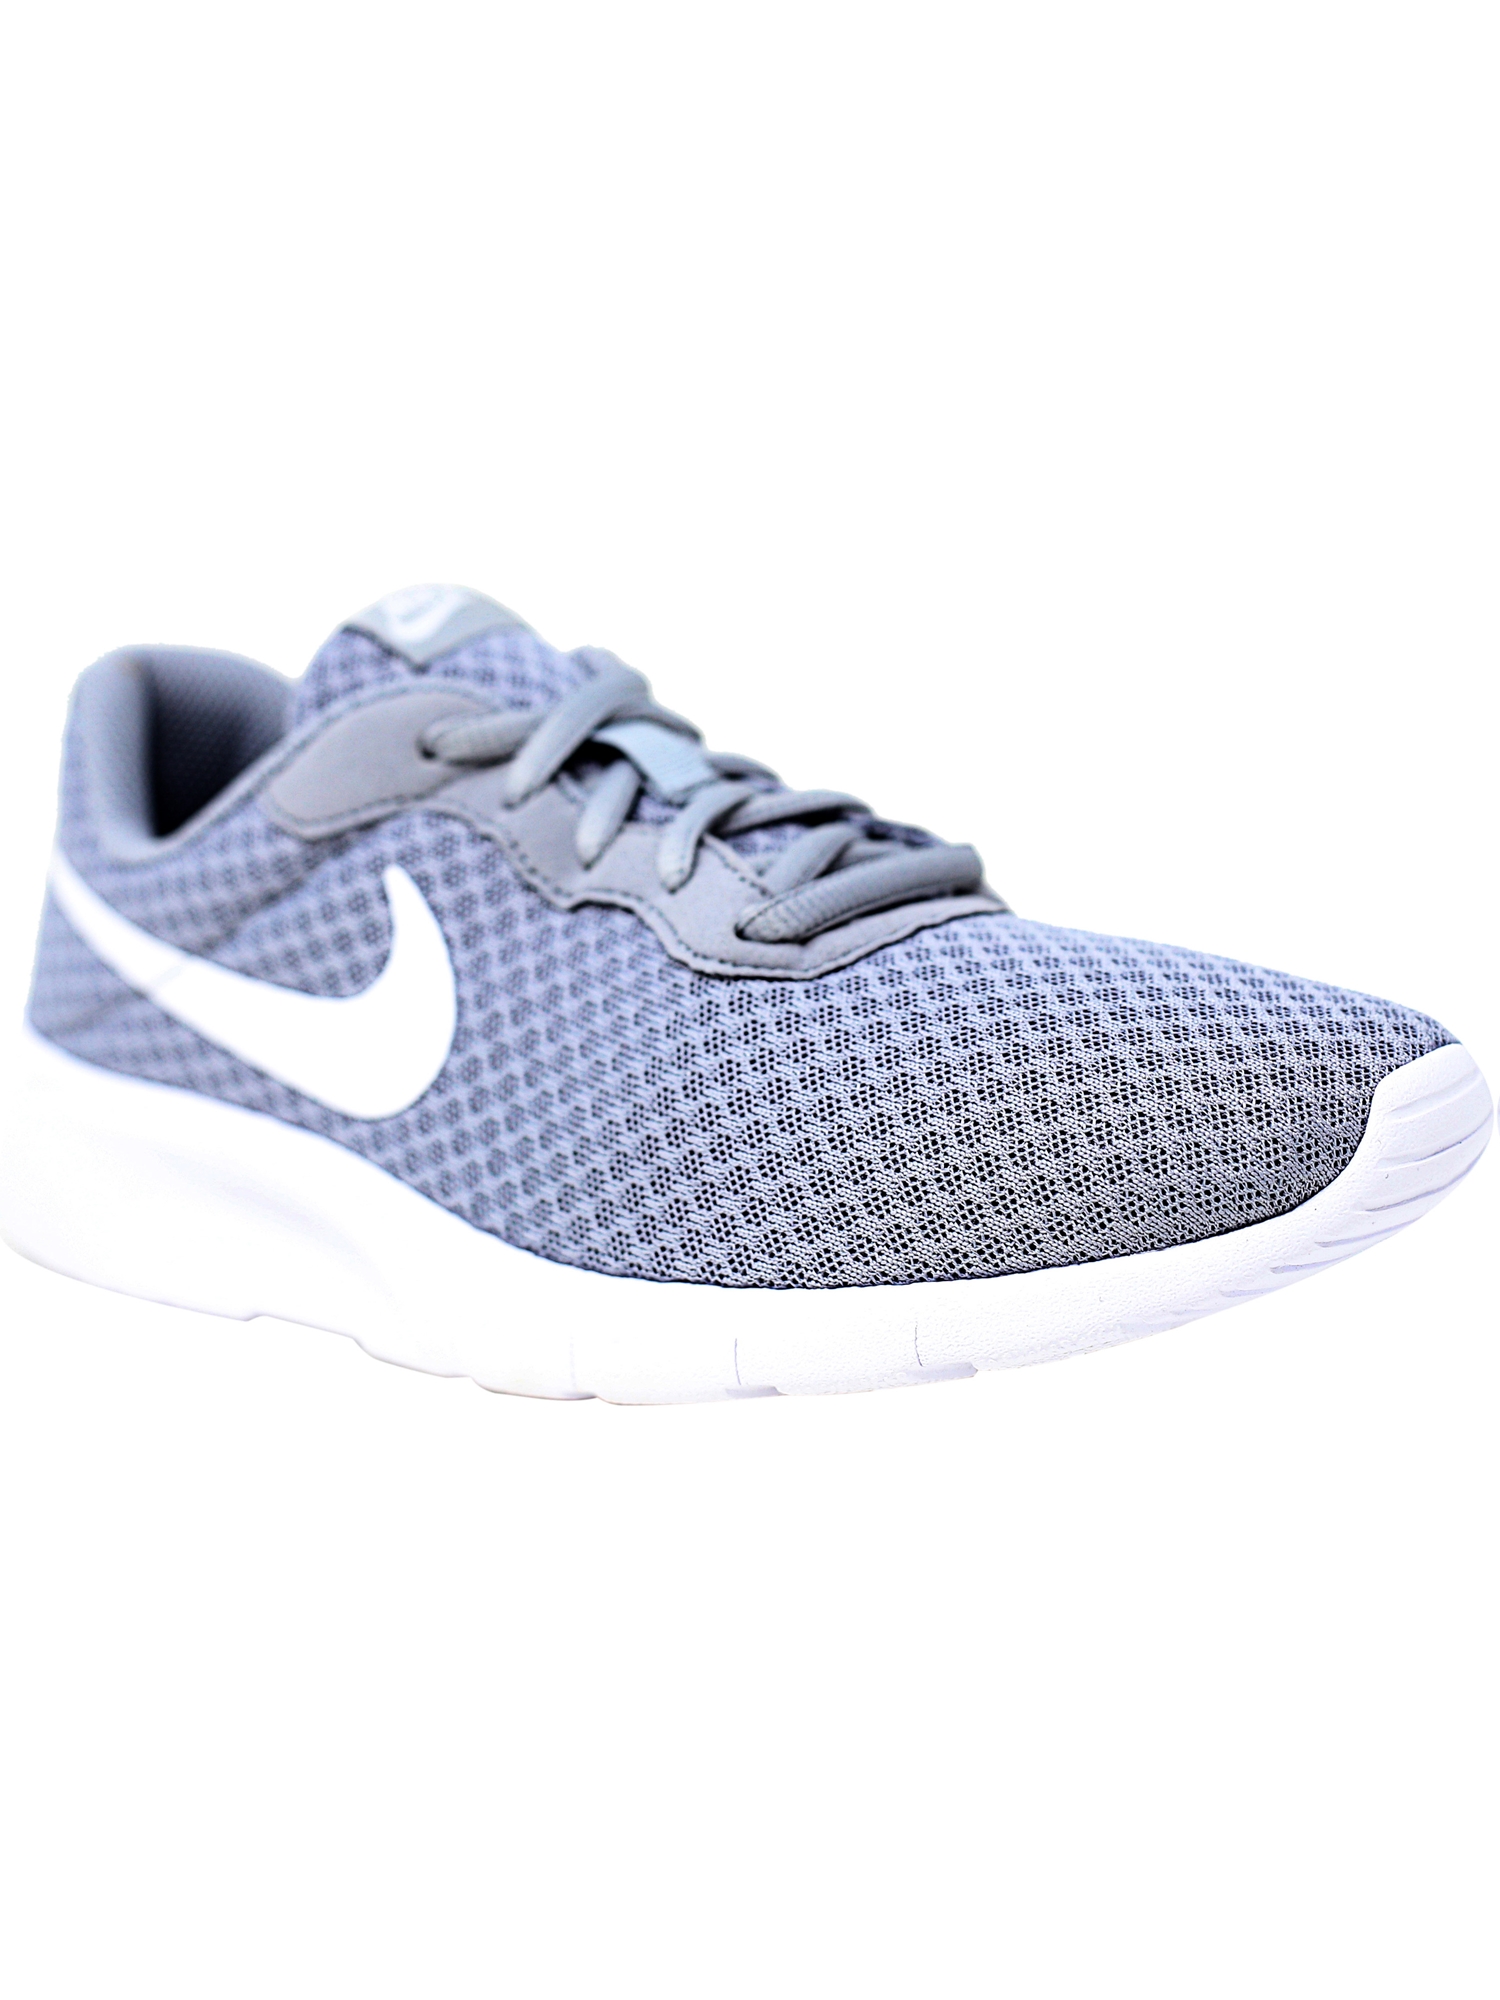 Nike Tanjun Wolf Grey / White - Ankle-High Mesh Running Shoe 7M - image 2 of 6